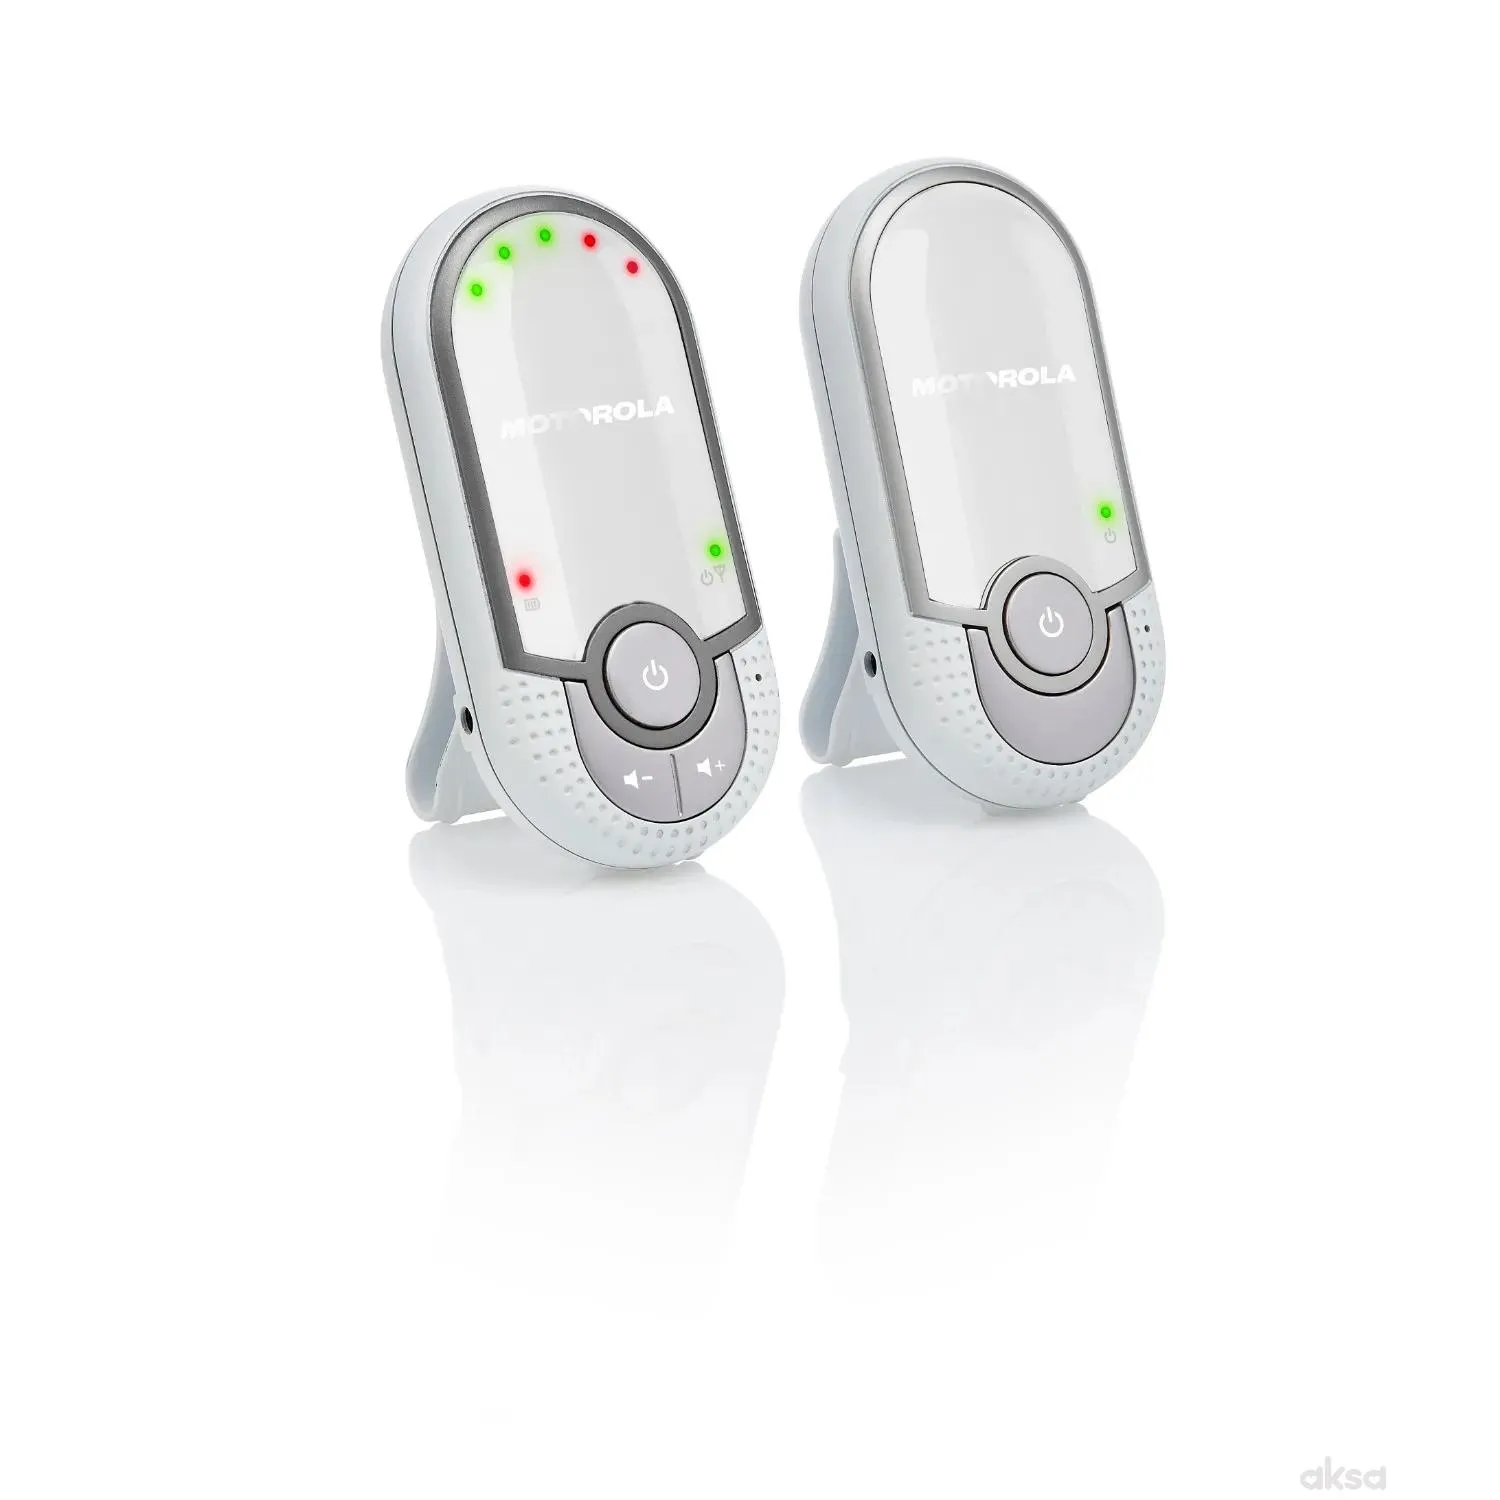 Motorola audio baby alarm MBP11 